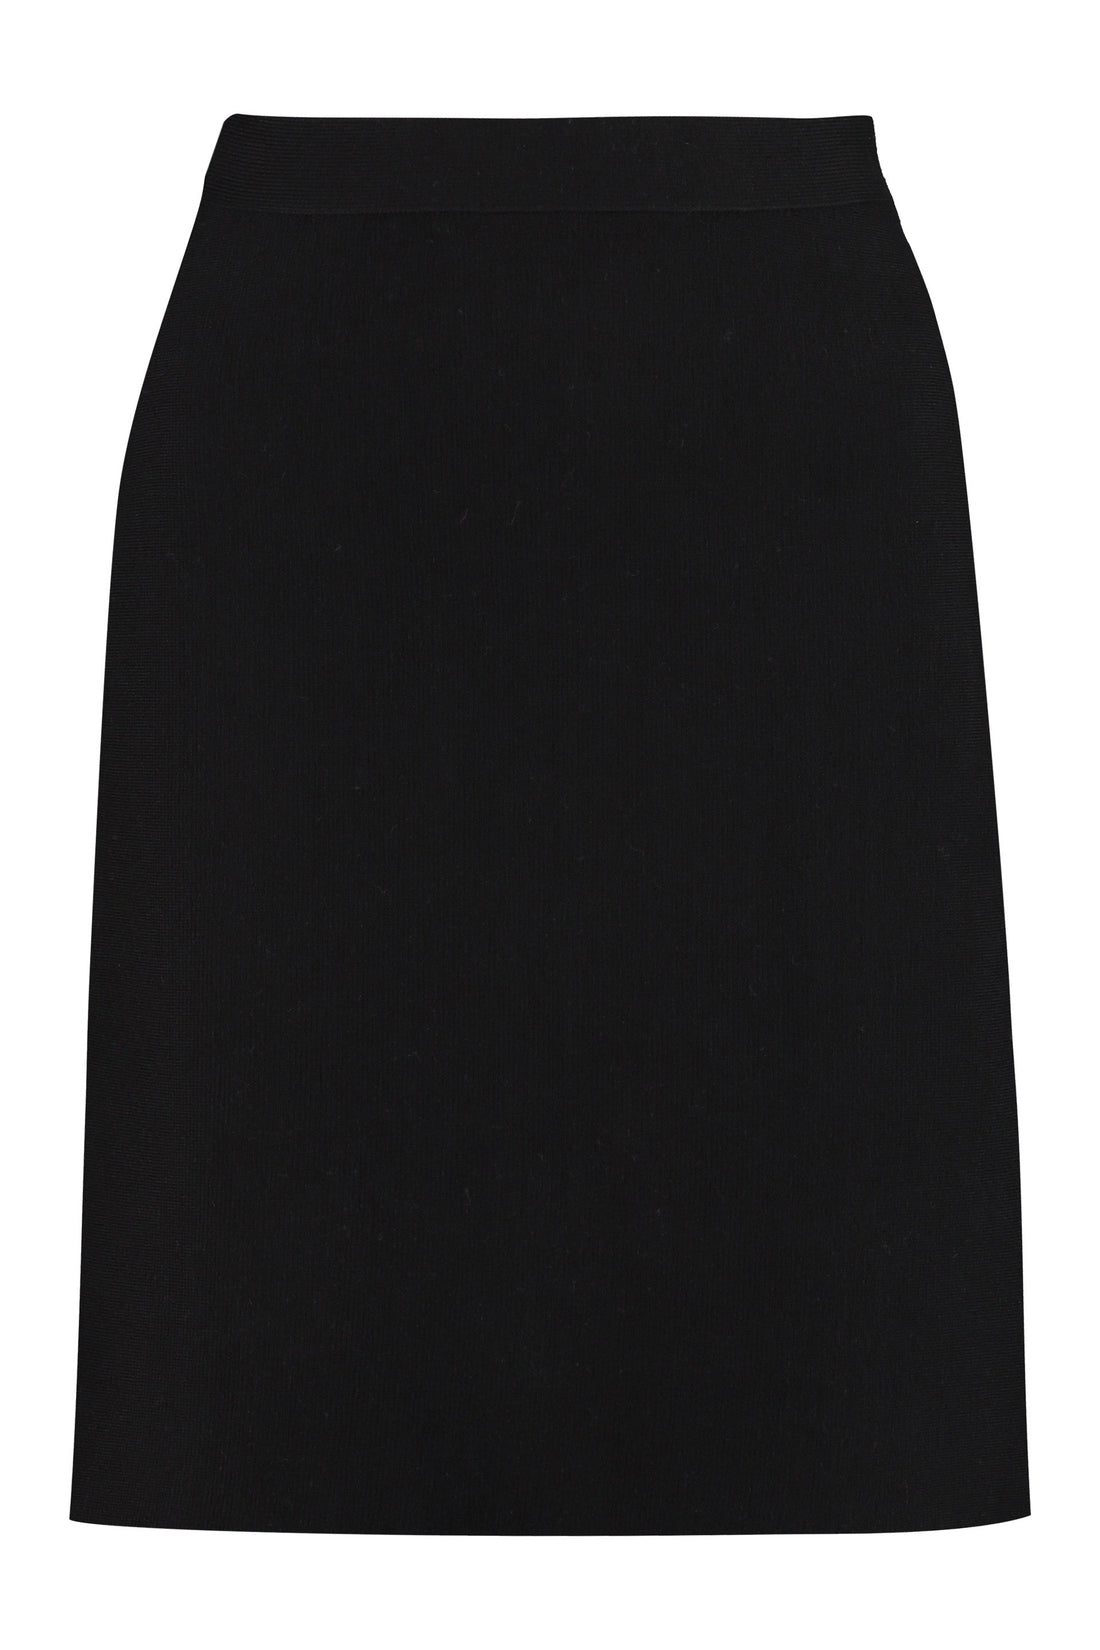 Bottega Veneta-OUTLET-SALE-Knitted mini skirt-ARCHIVIST